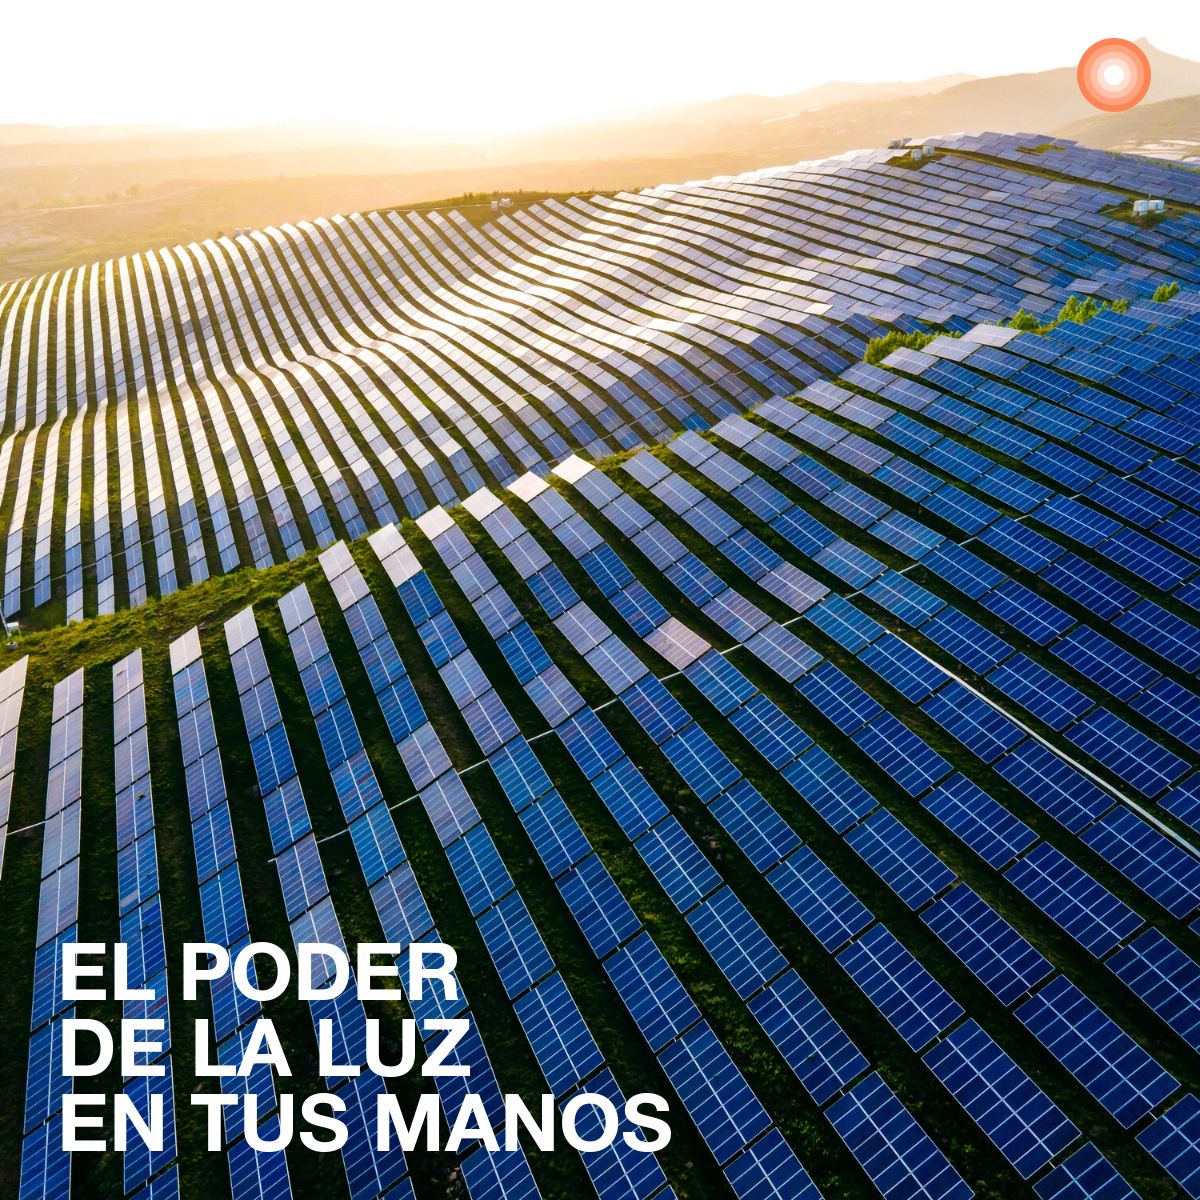 🌱 #ElPoderdelaLuz se abre paso a través de #LEDVANCERE, nuestra solución que integra todo lo que necesitas para generar, almacenar y usar #energía limpia.

Más información aquí: bit.ly/49bS2vg